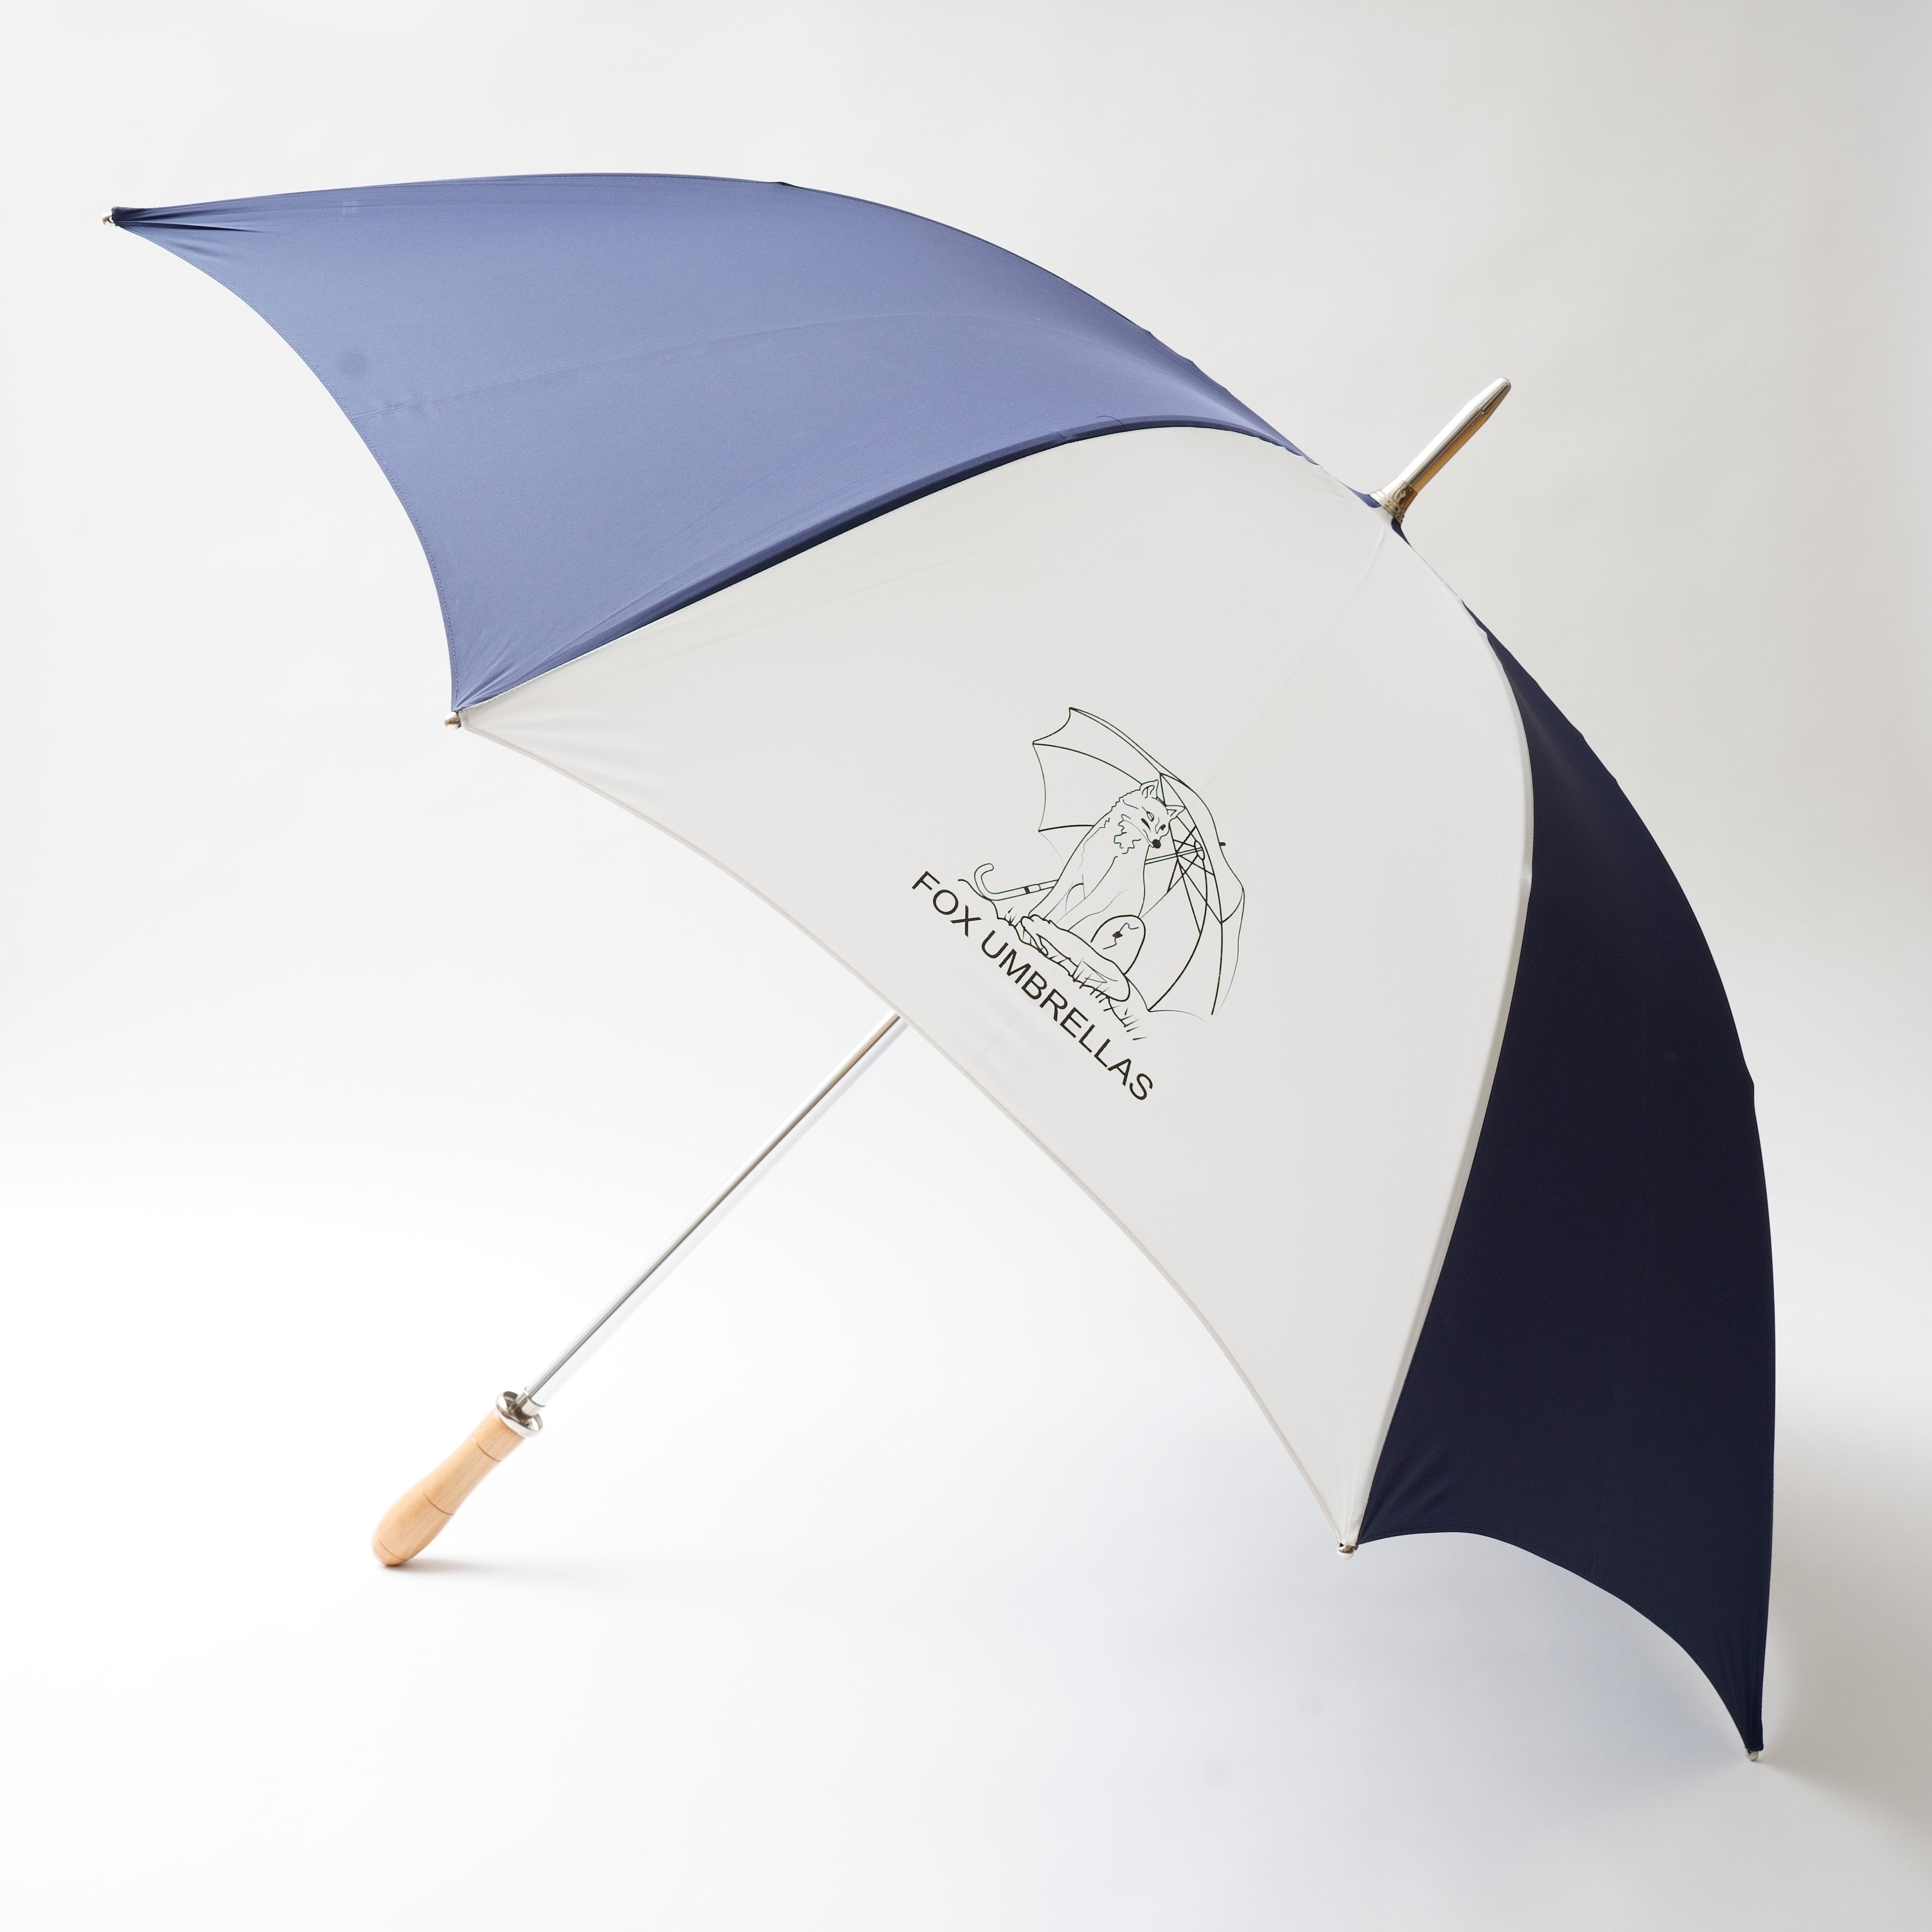 ゴルフ 晴雨兼用傘 G1 Fox Umbrellas/フォックスアンブレラズ 